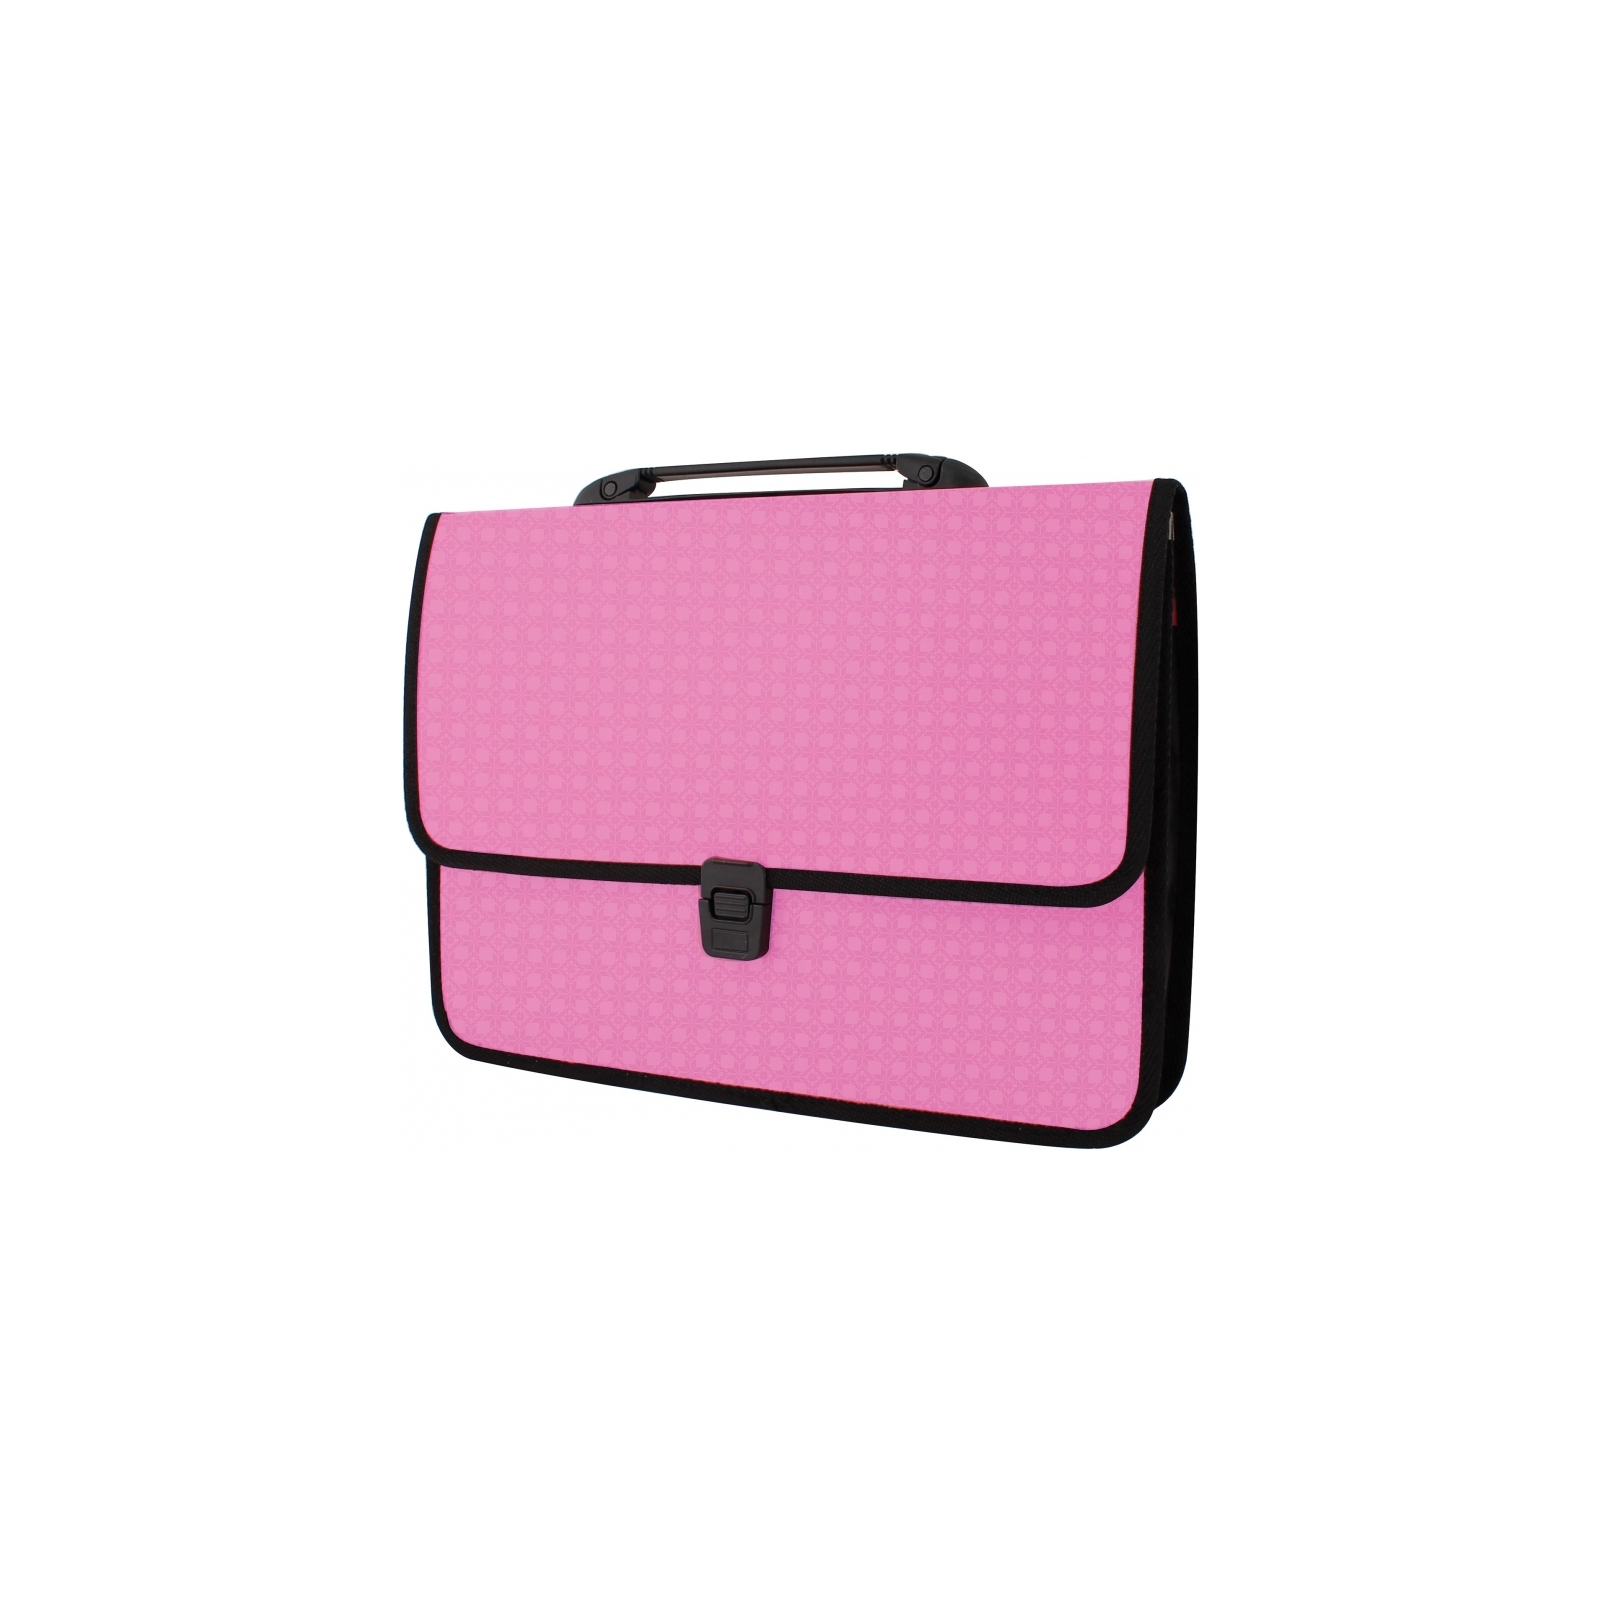 Папка - портфель Economix на застежке, фактура Вышиванка, розовый (E31641-09)